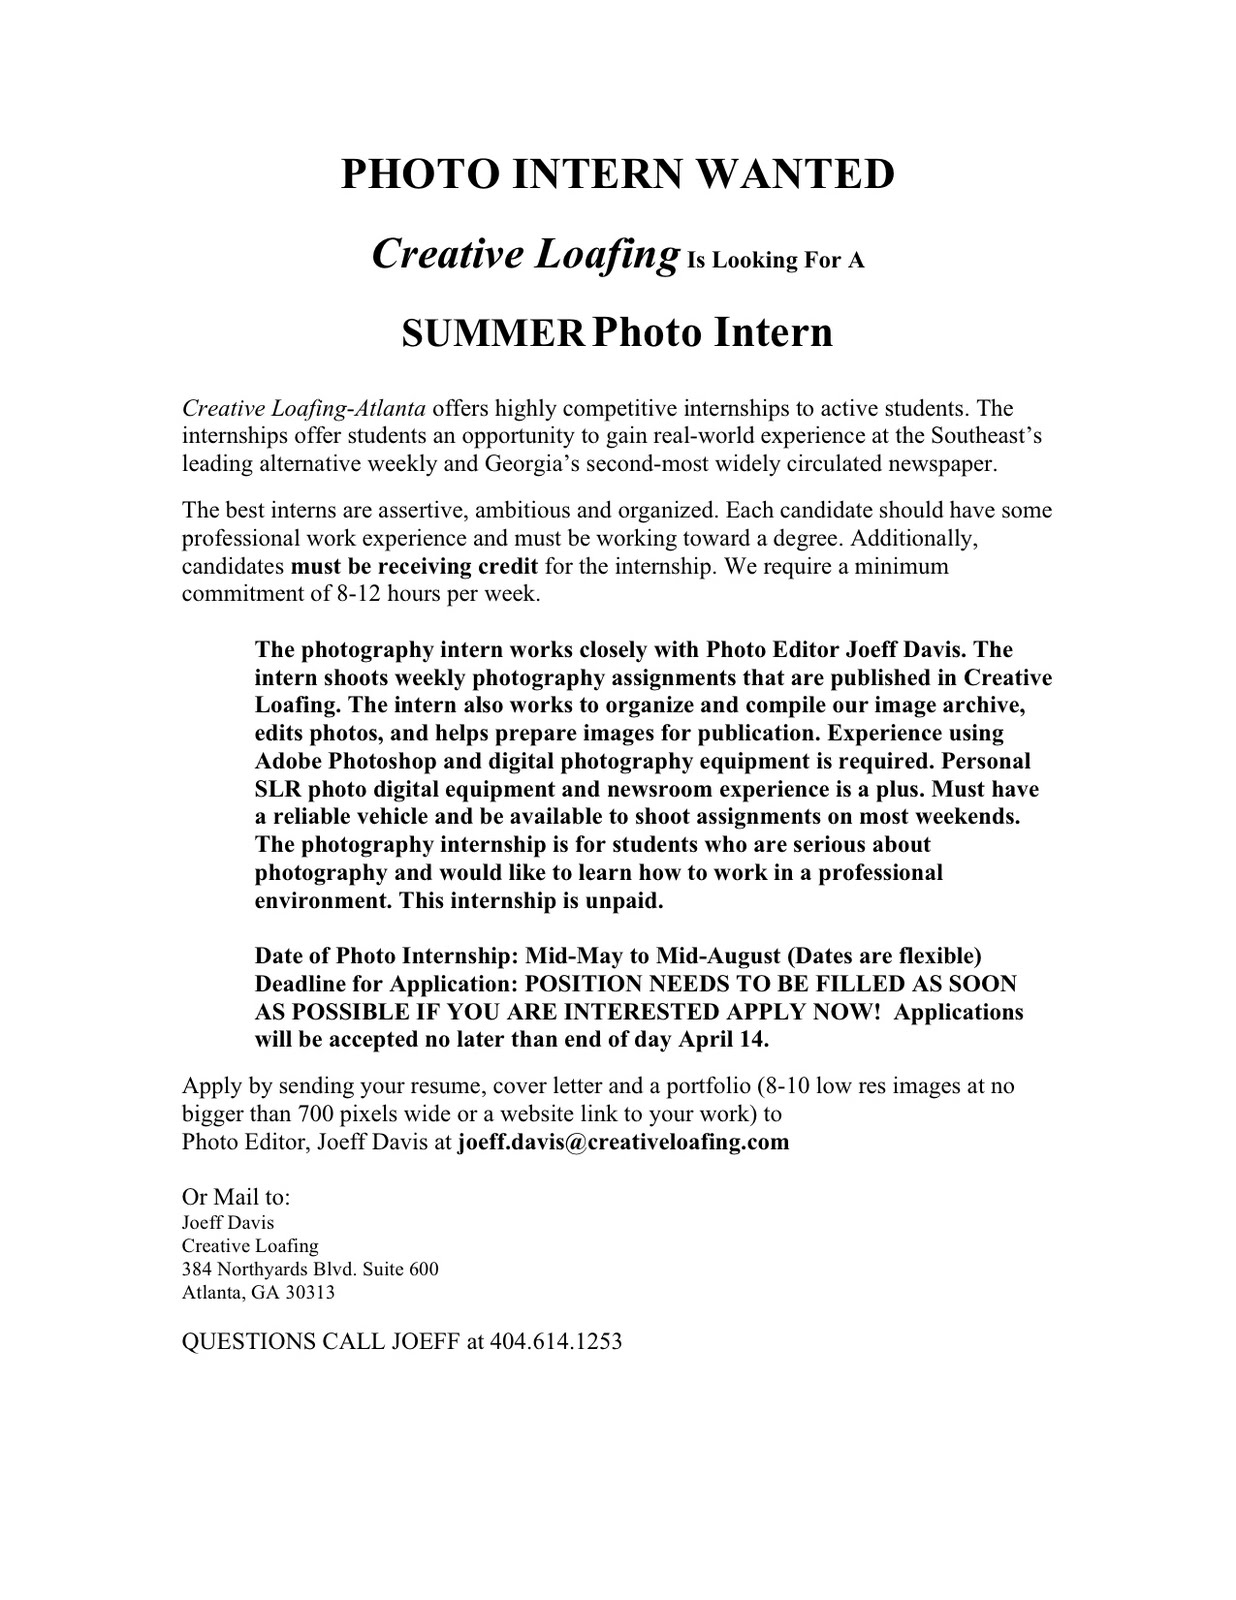 Cover letter for internships